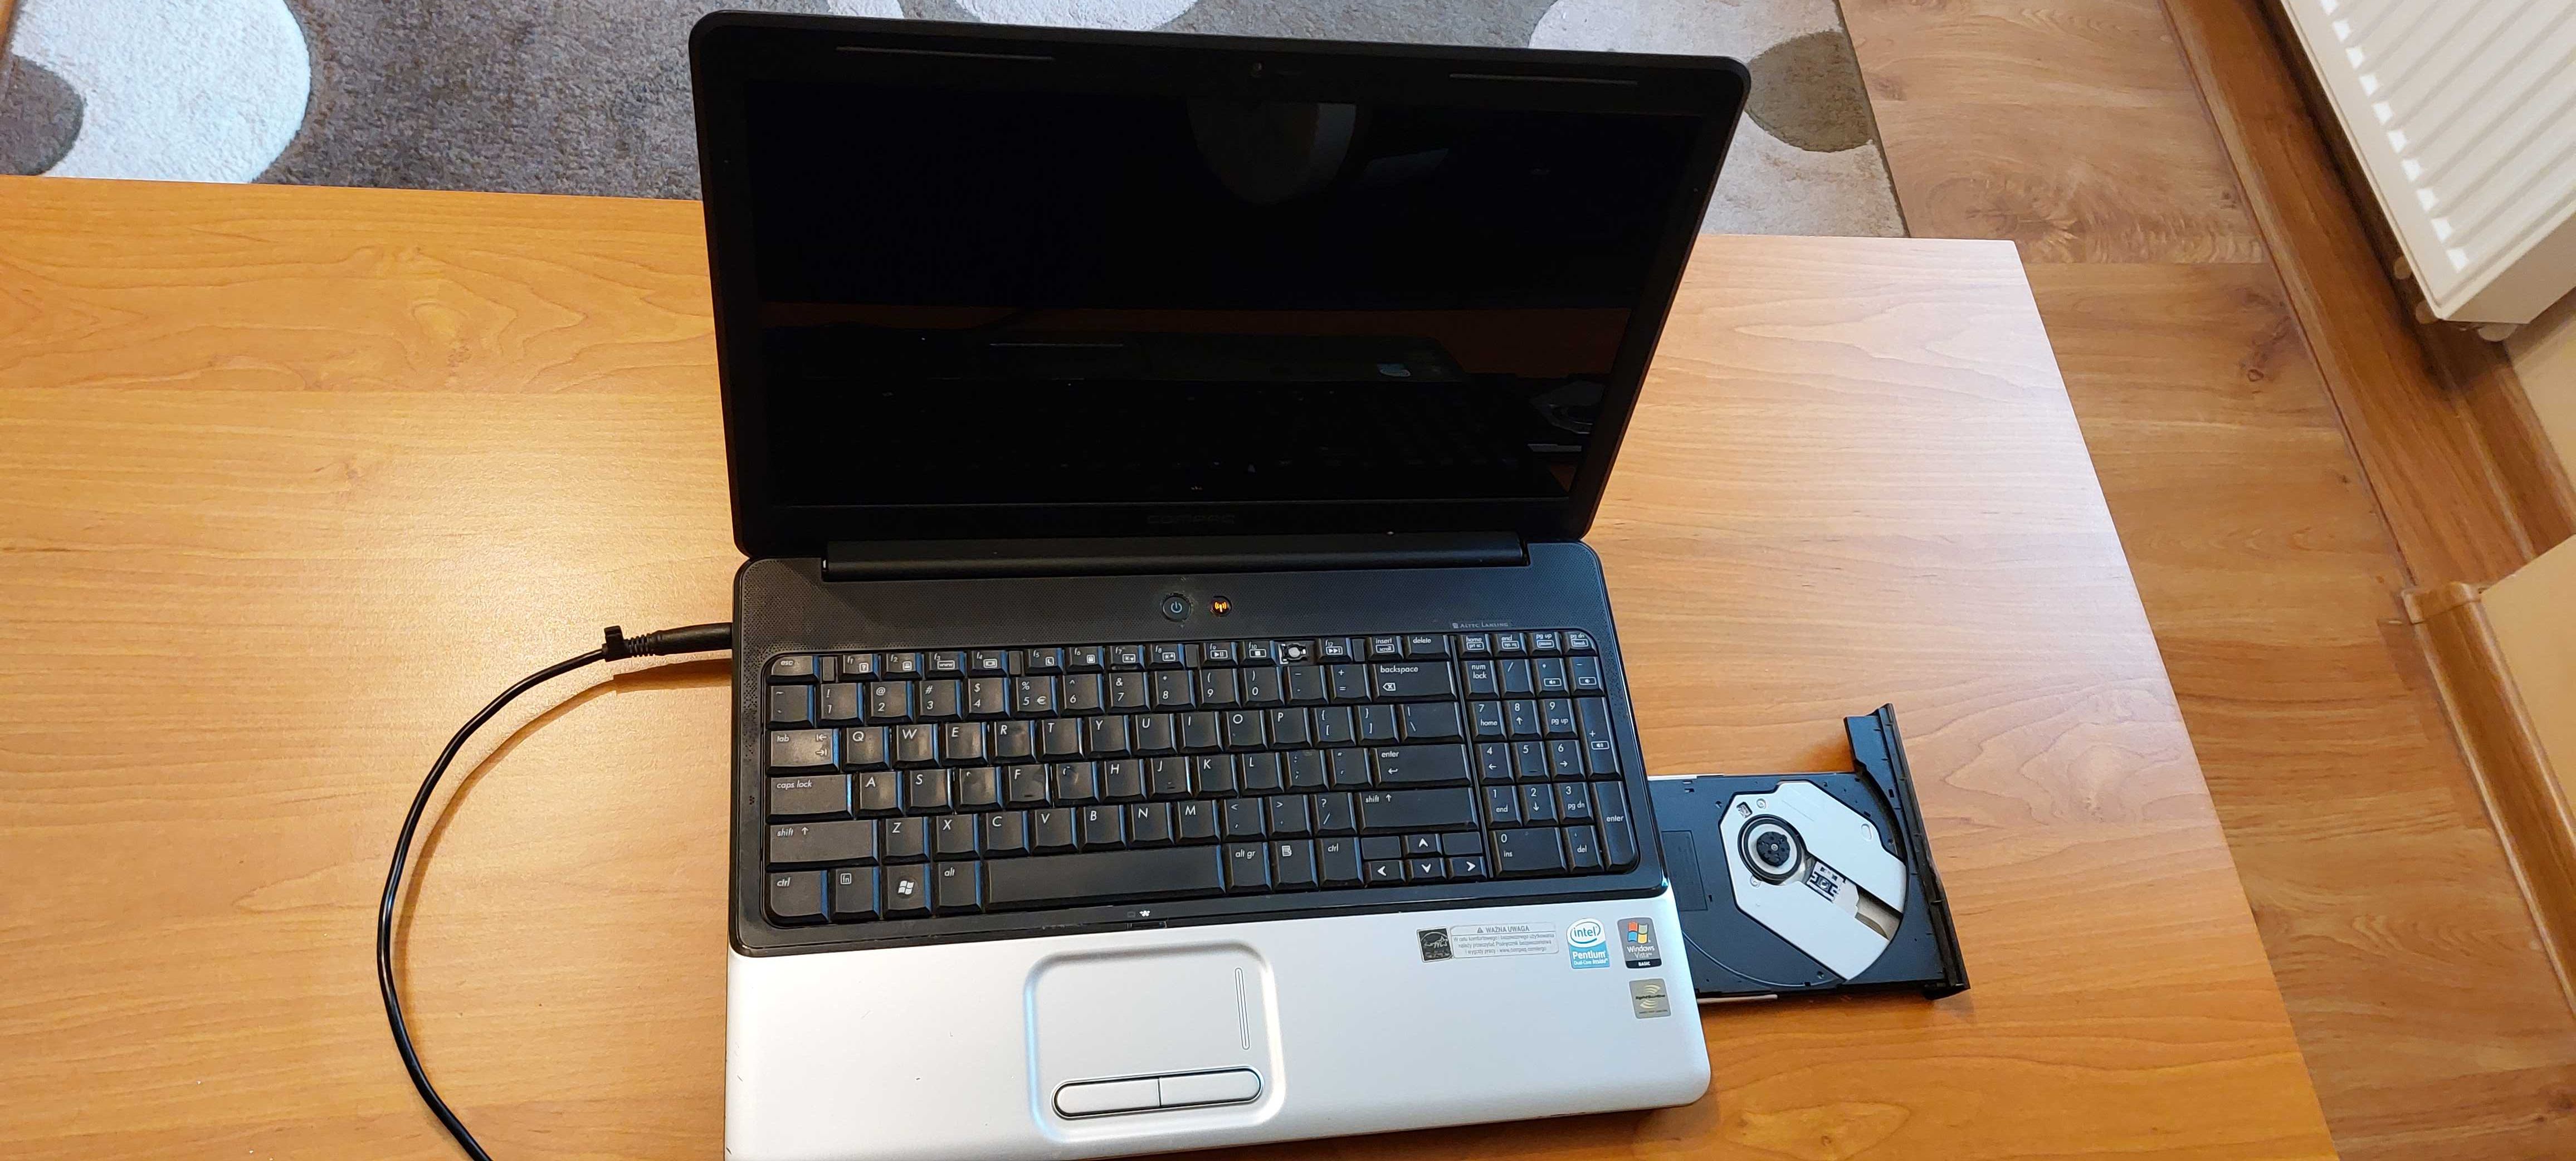 Laptop HP Compaq Presario CQ60 + Gratis